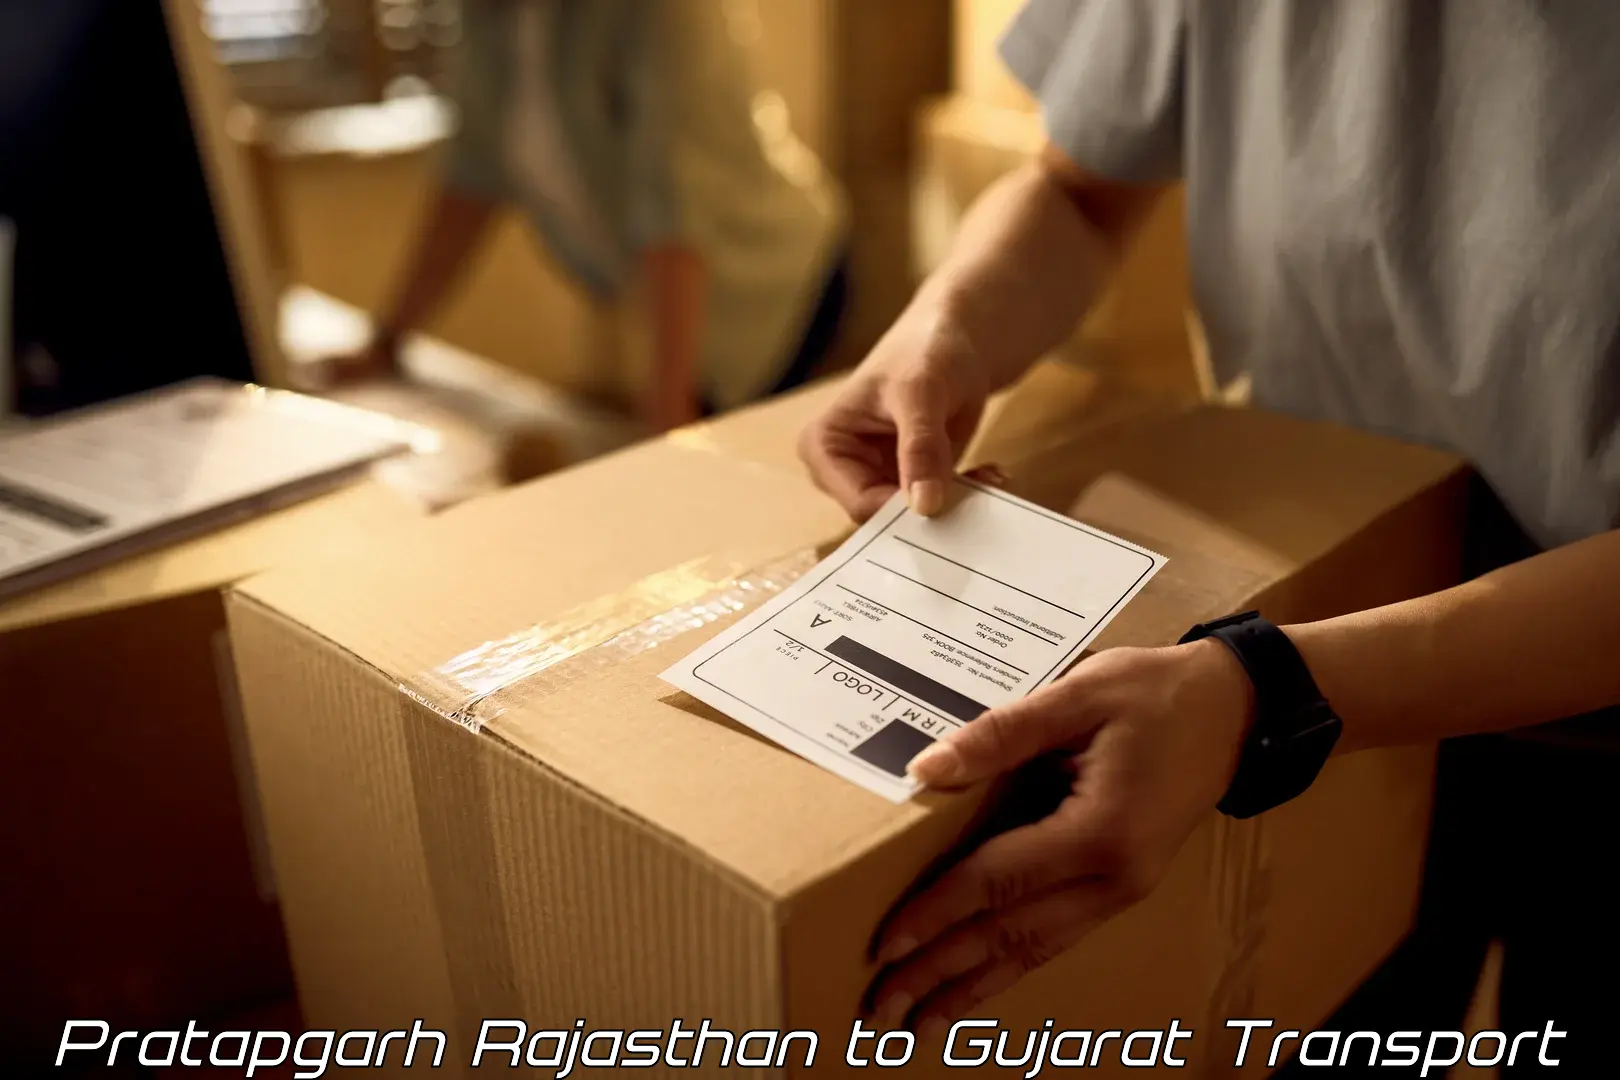 Air freight transport services Pratapgarh Rajasthan to Dholera